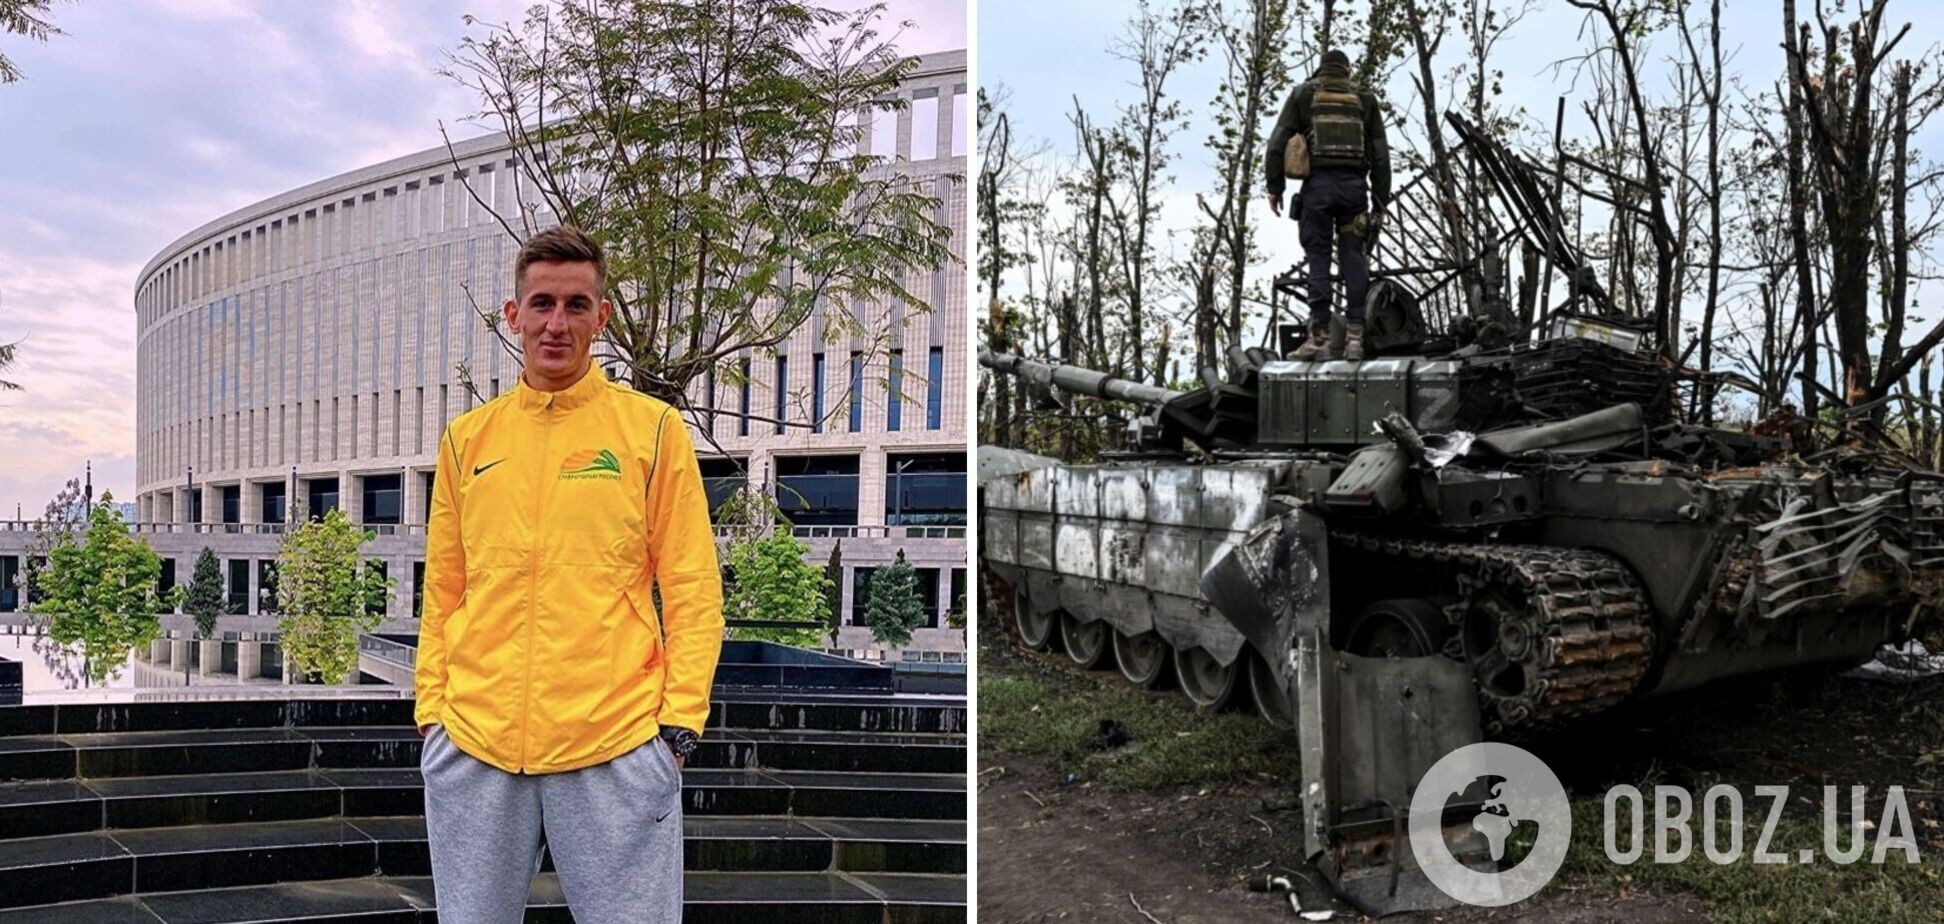 'Чекаю. Готовий. Моє бажання нічого не варте': російський футболіст висловився про мобілізацію та війну в Україні